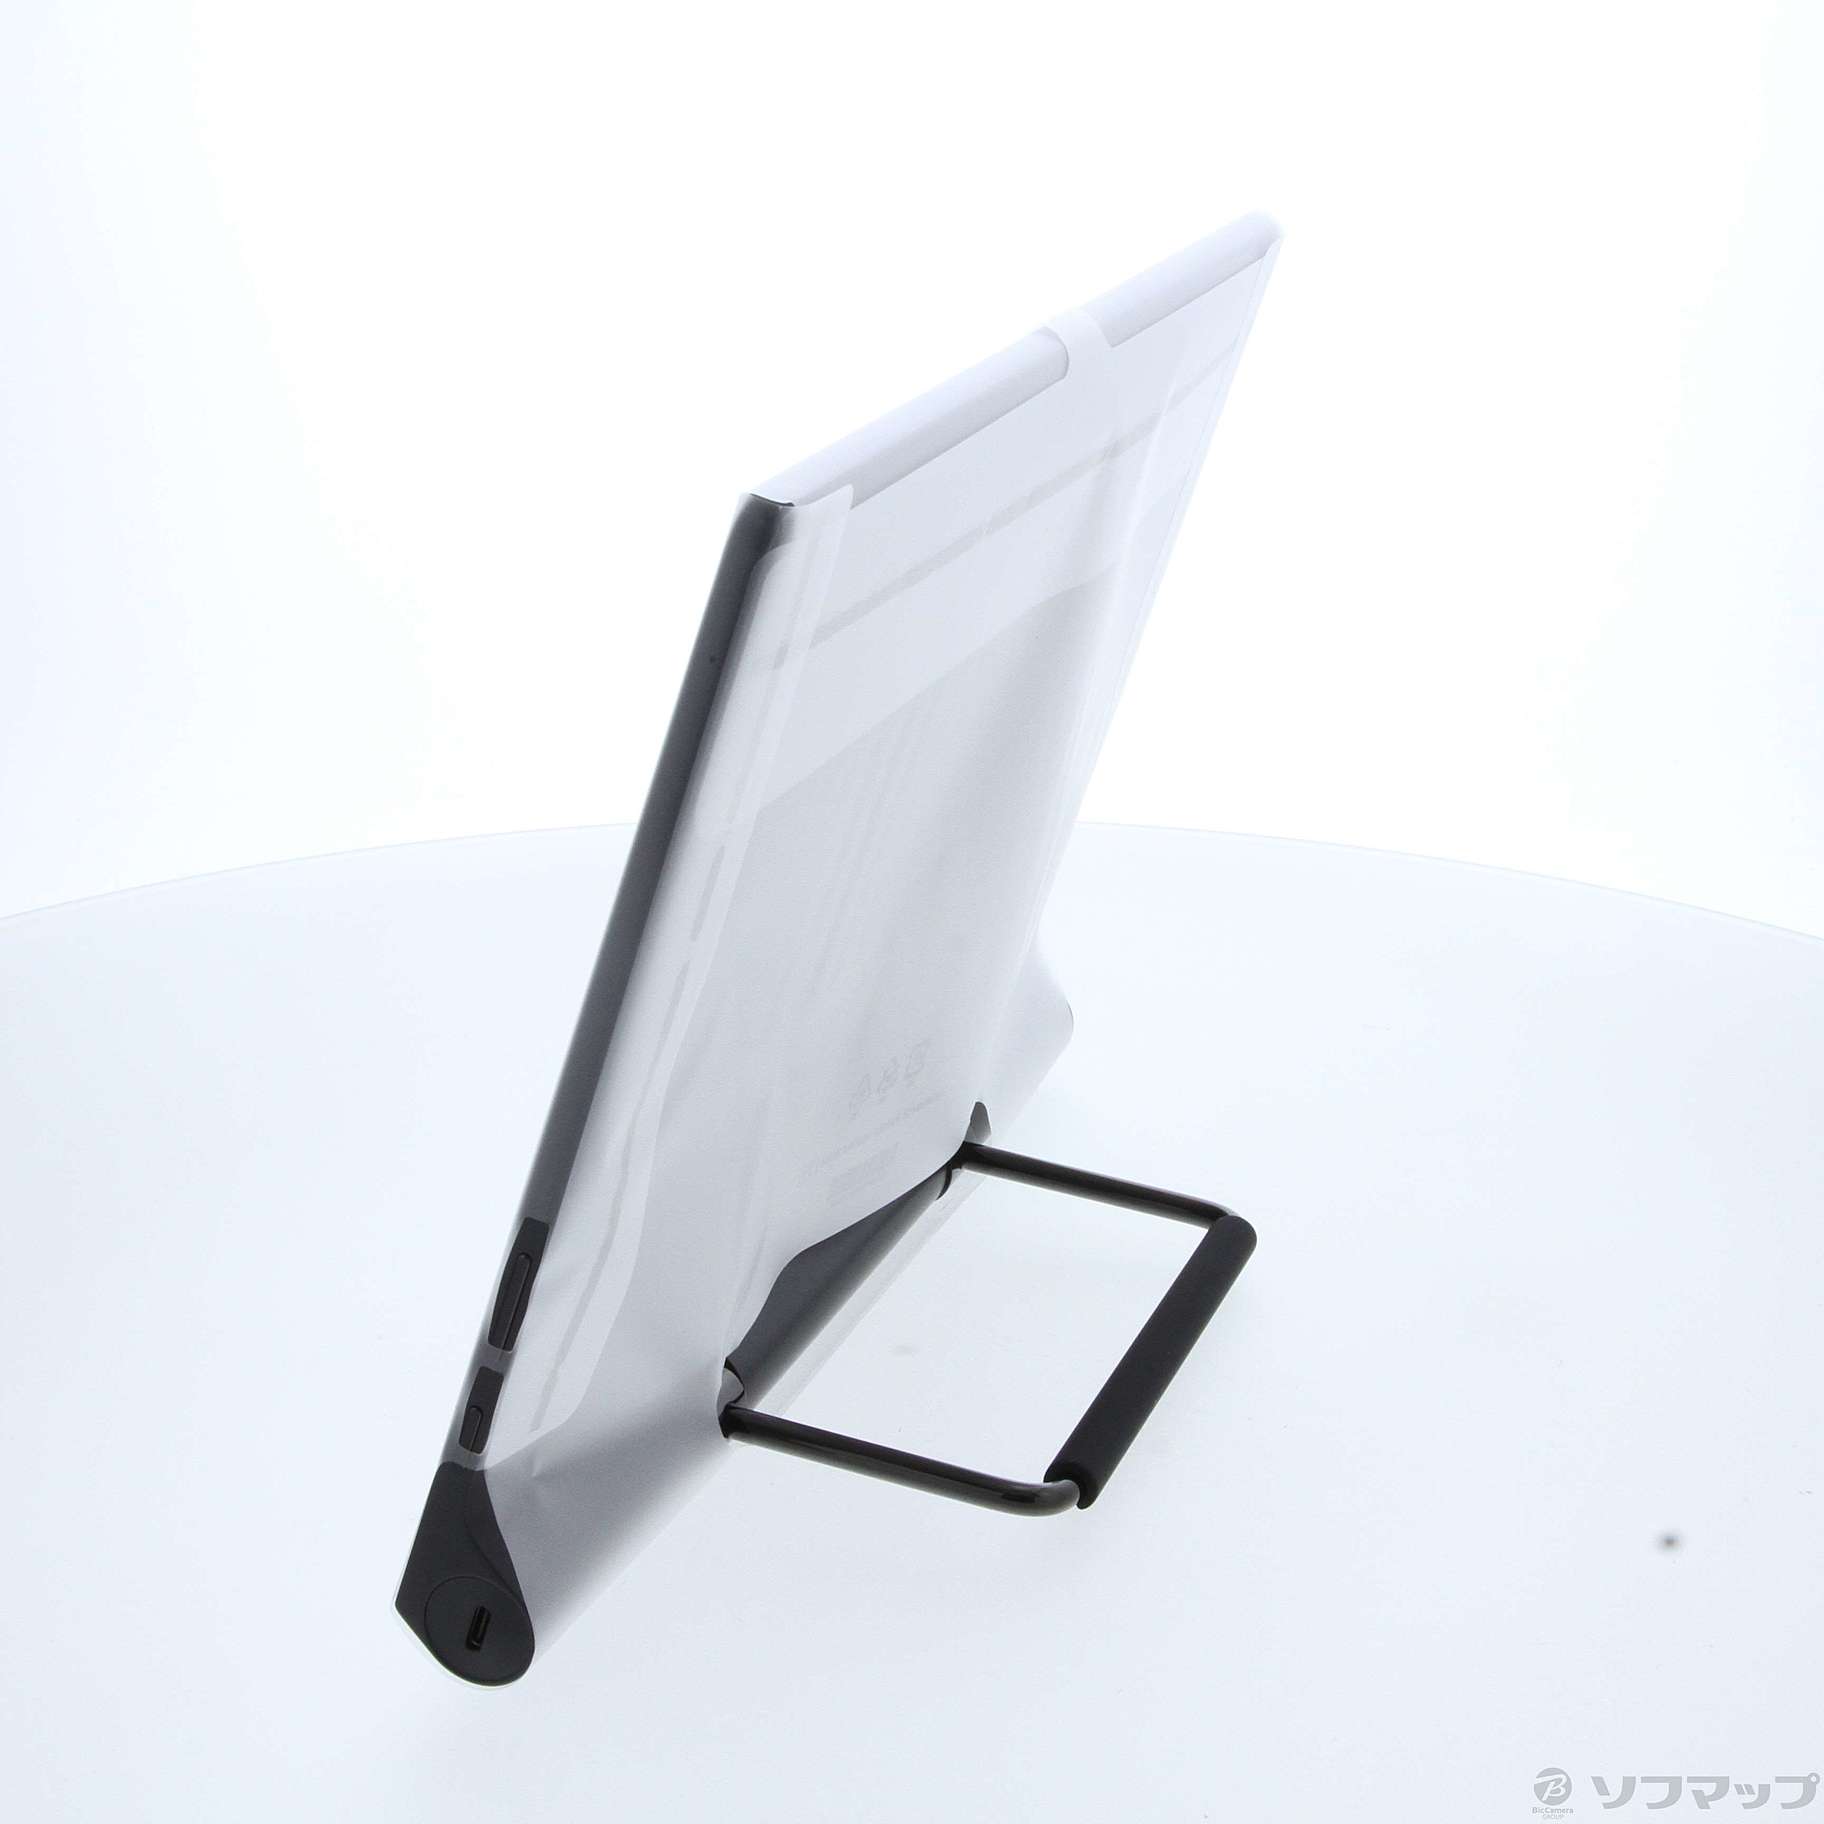 中古】Lenovo Yoga Tab 13 128GB シャドーブラック ZA8E0029JP Wi-Fi ...